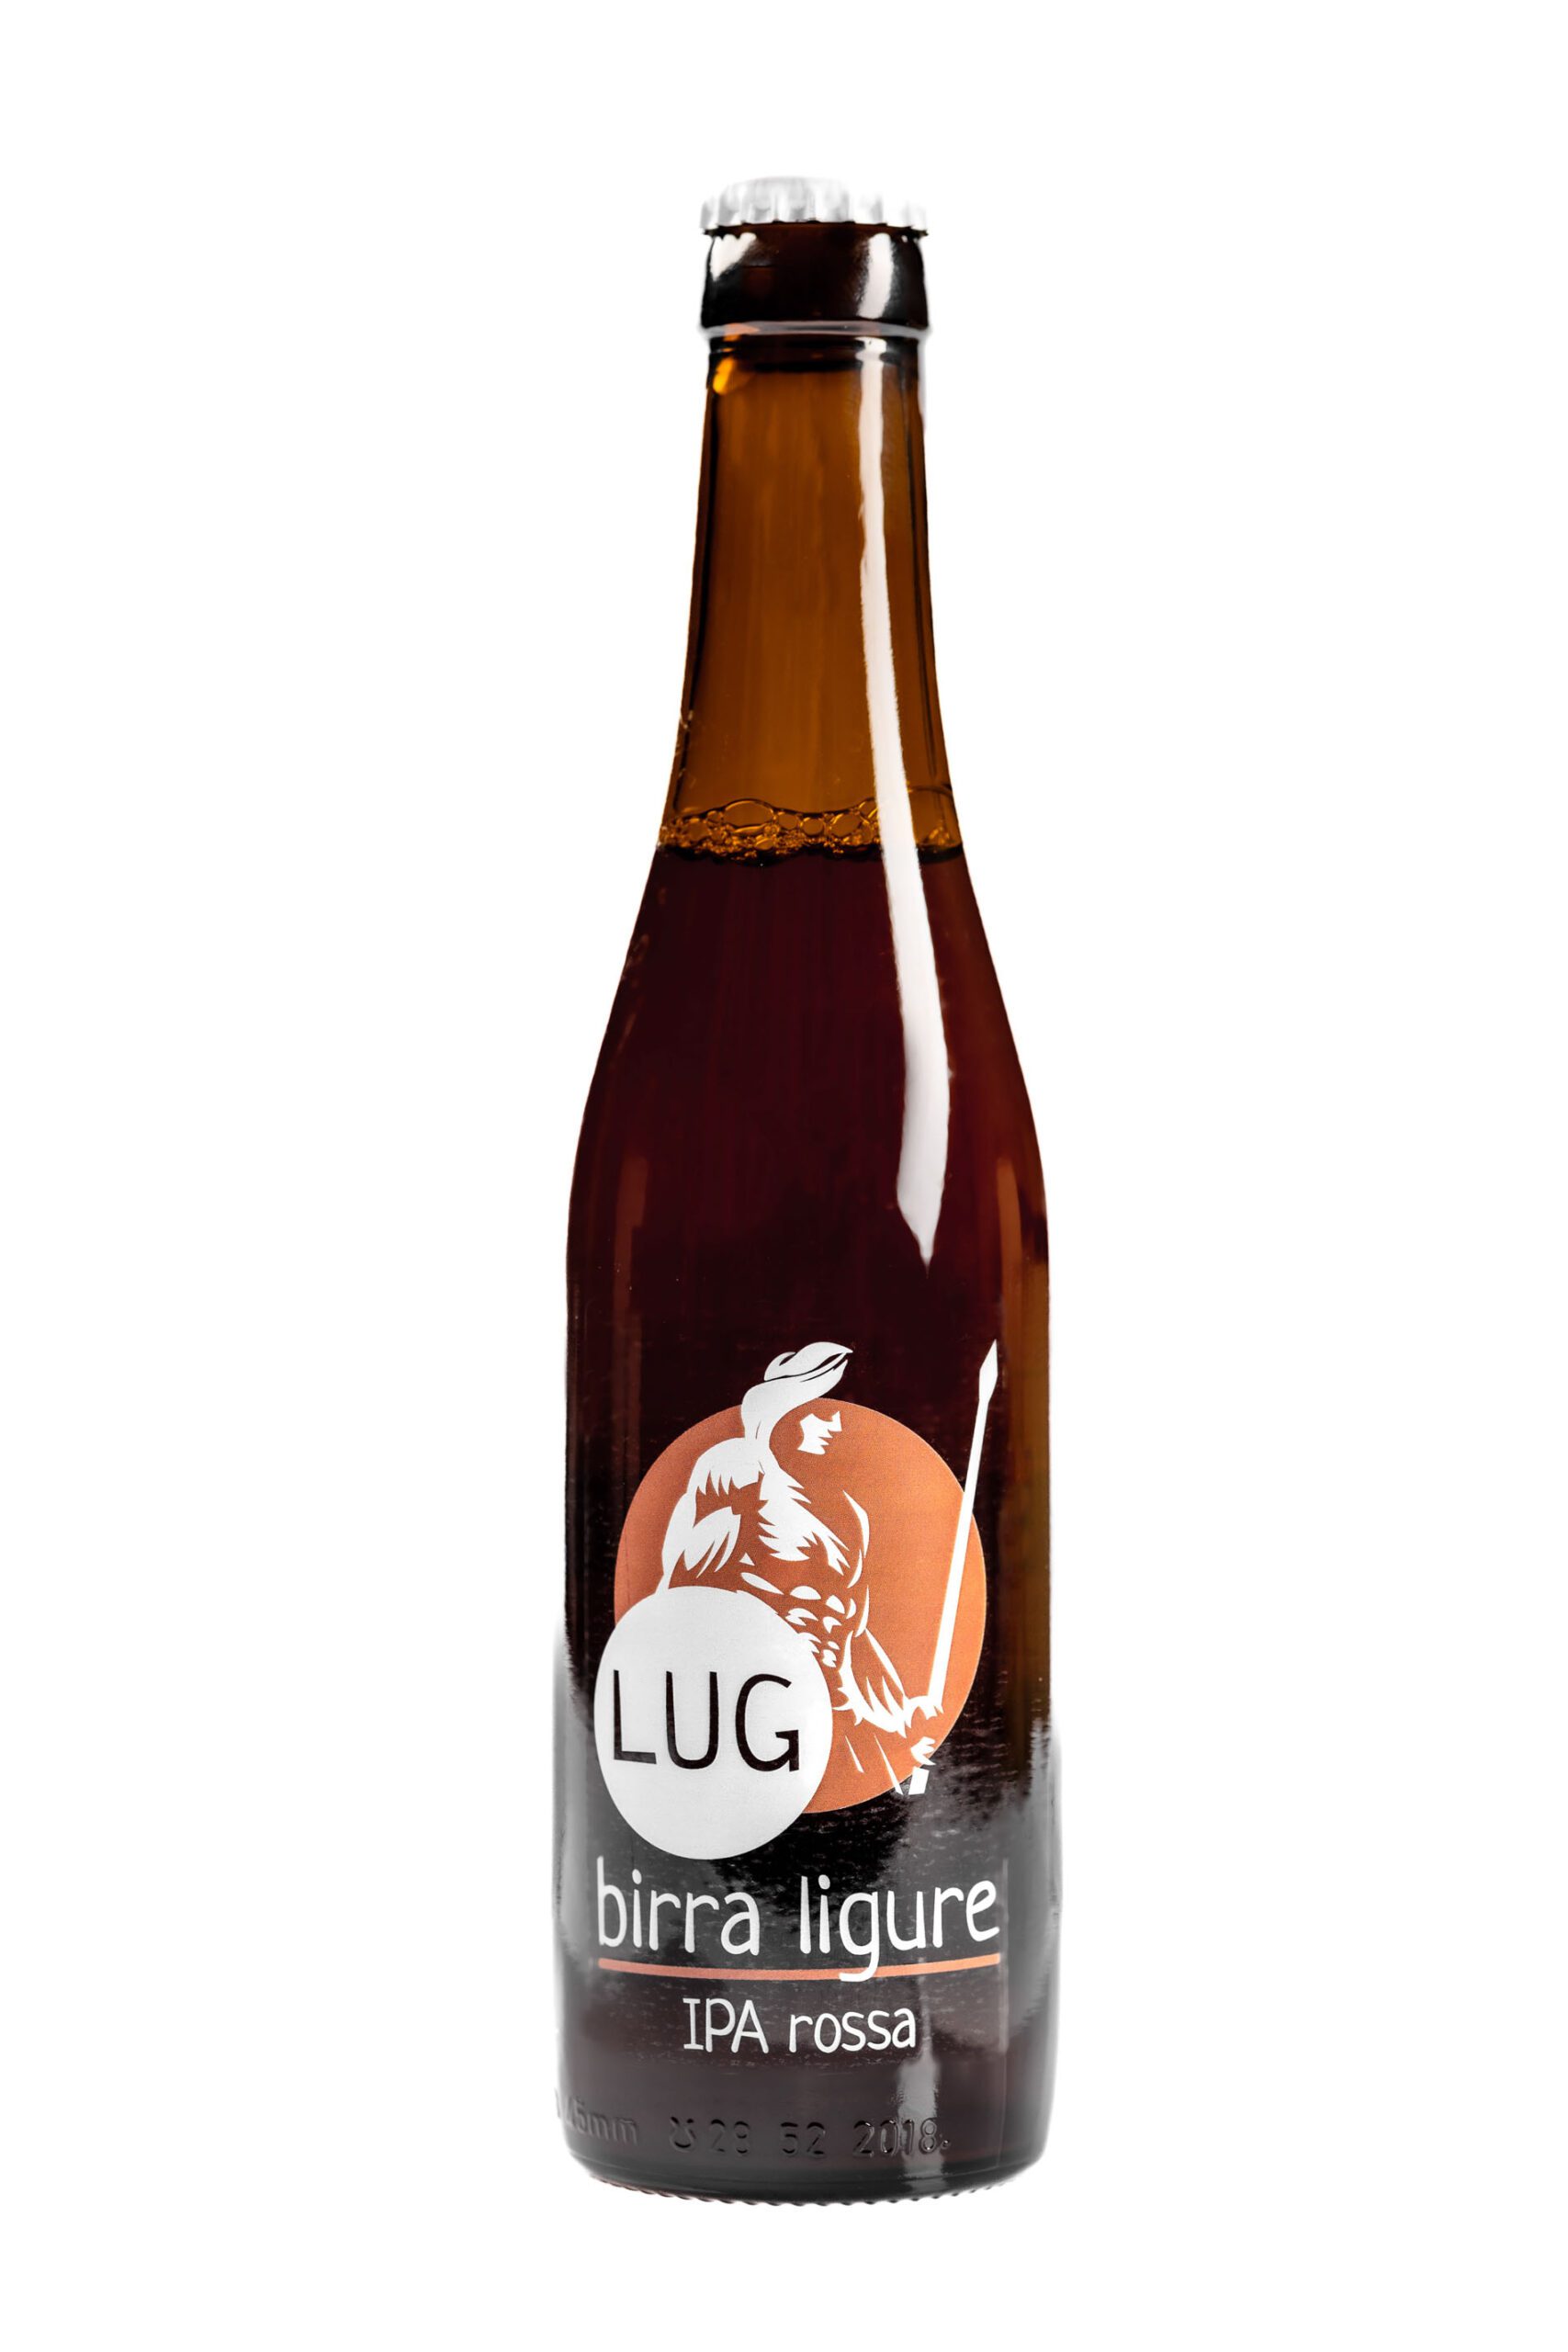 lug-birra-ligure-33-3